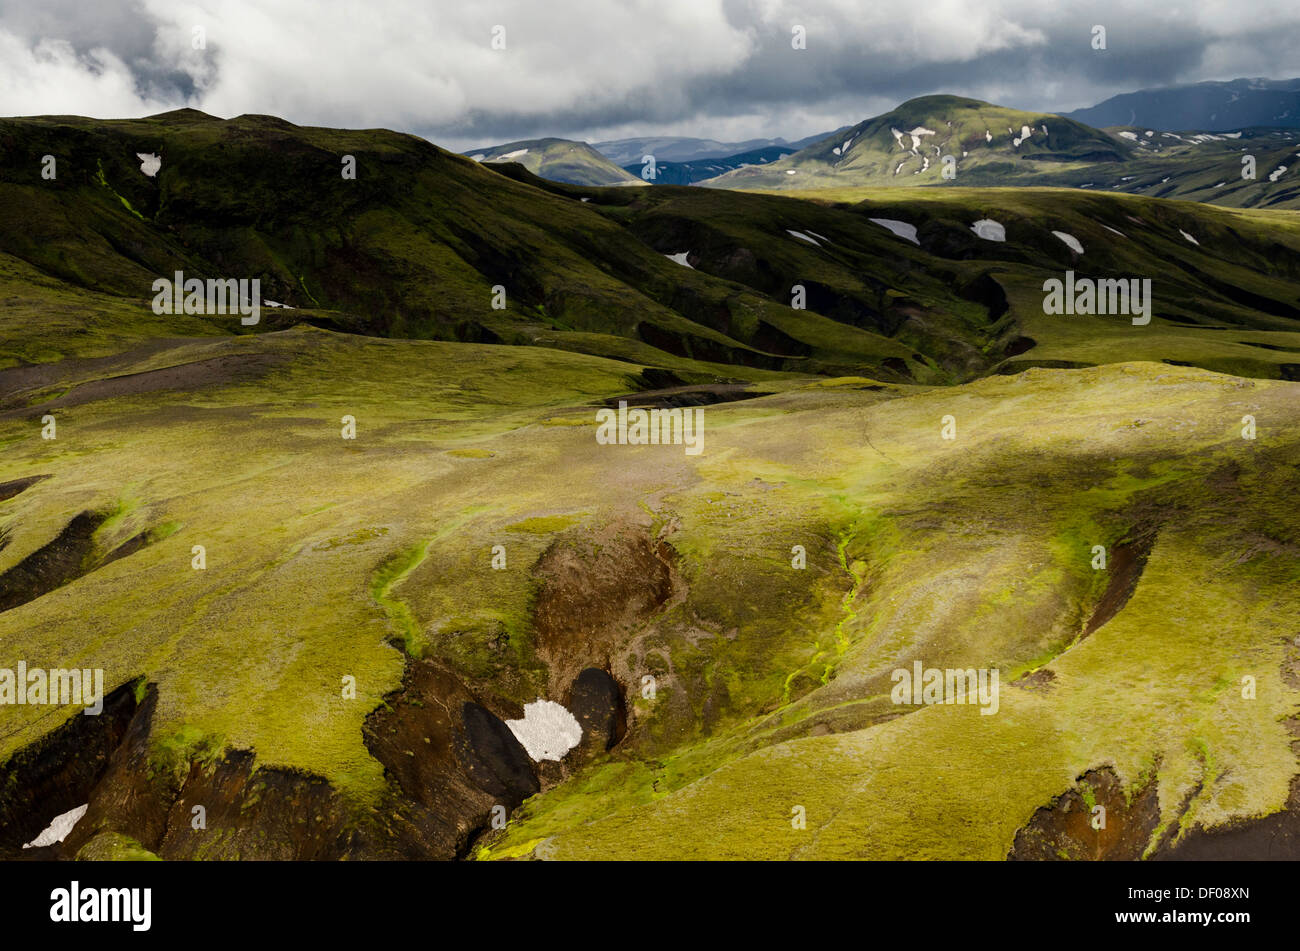 Vue aérienne, paysage couvert de mousse, Islandais, Islande, Europe Highlands Banque D'Images